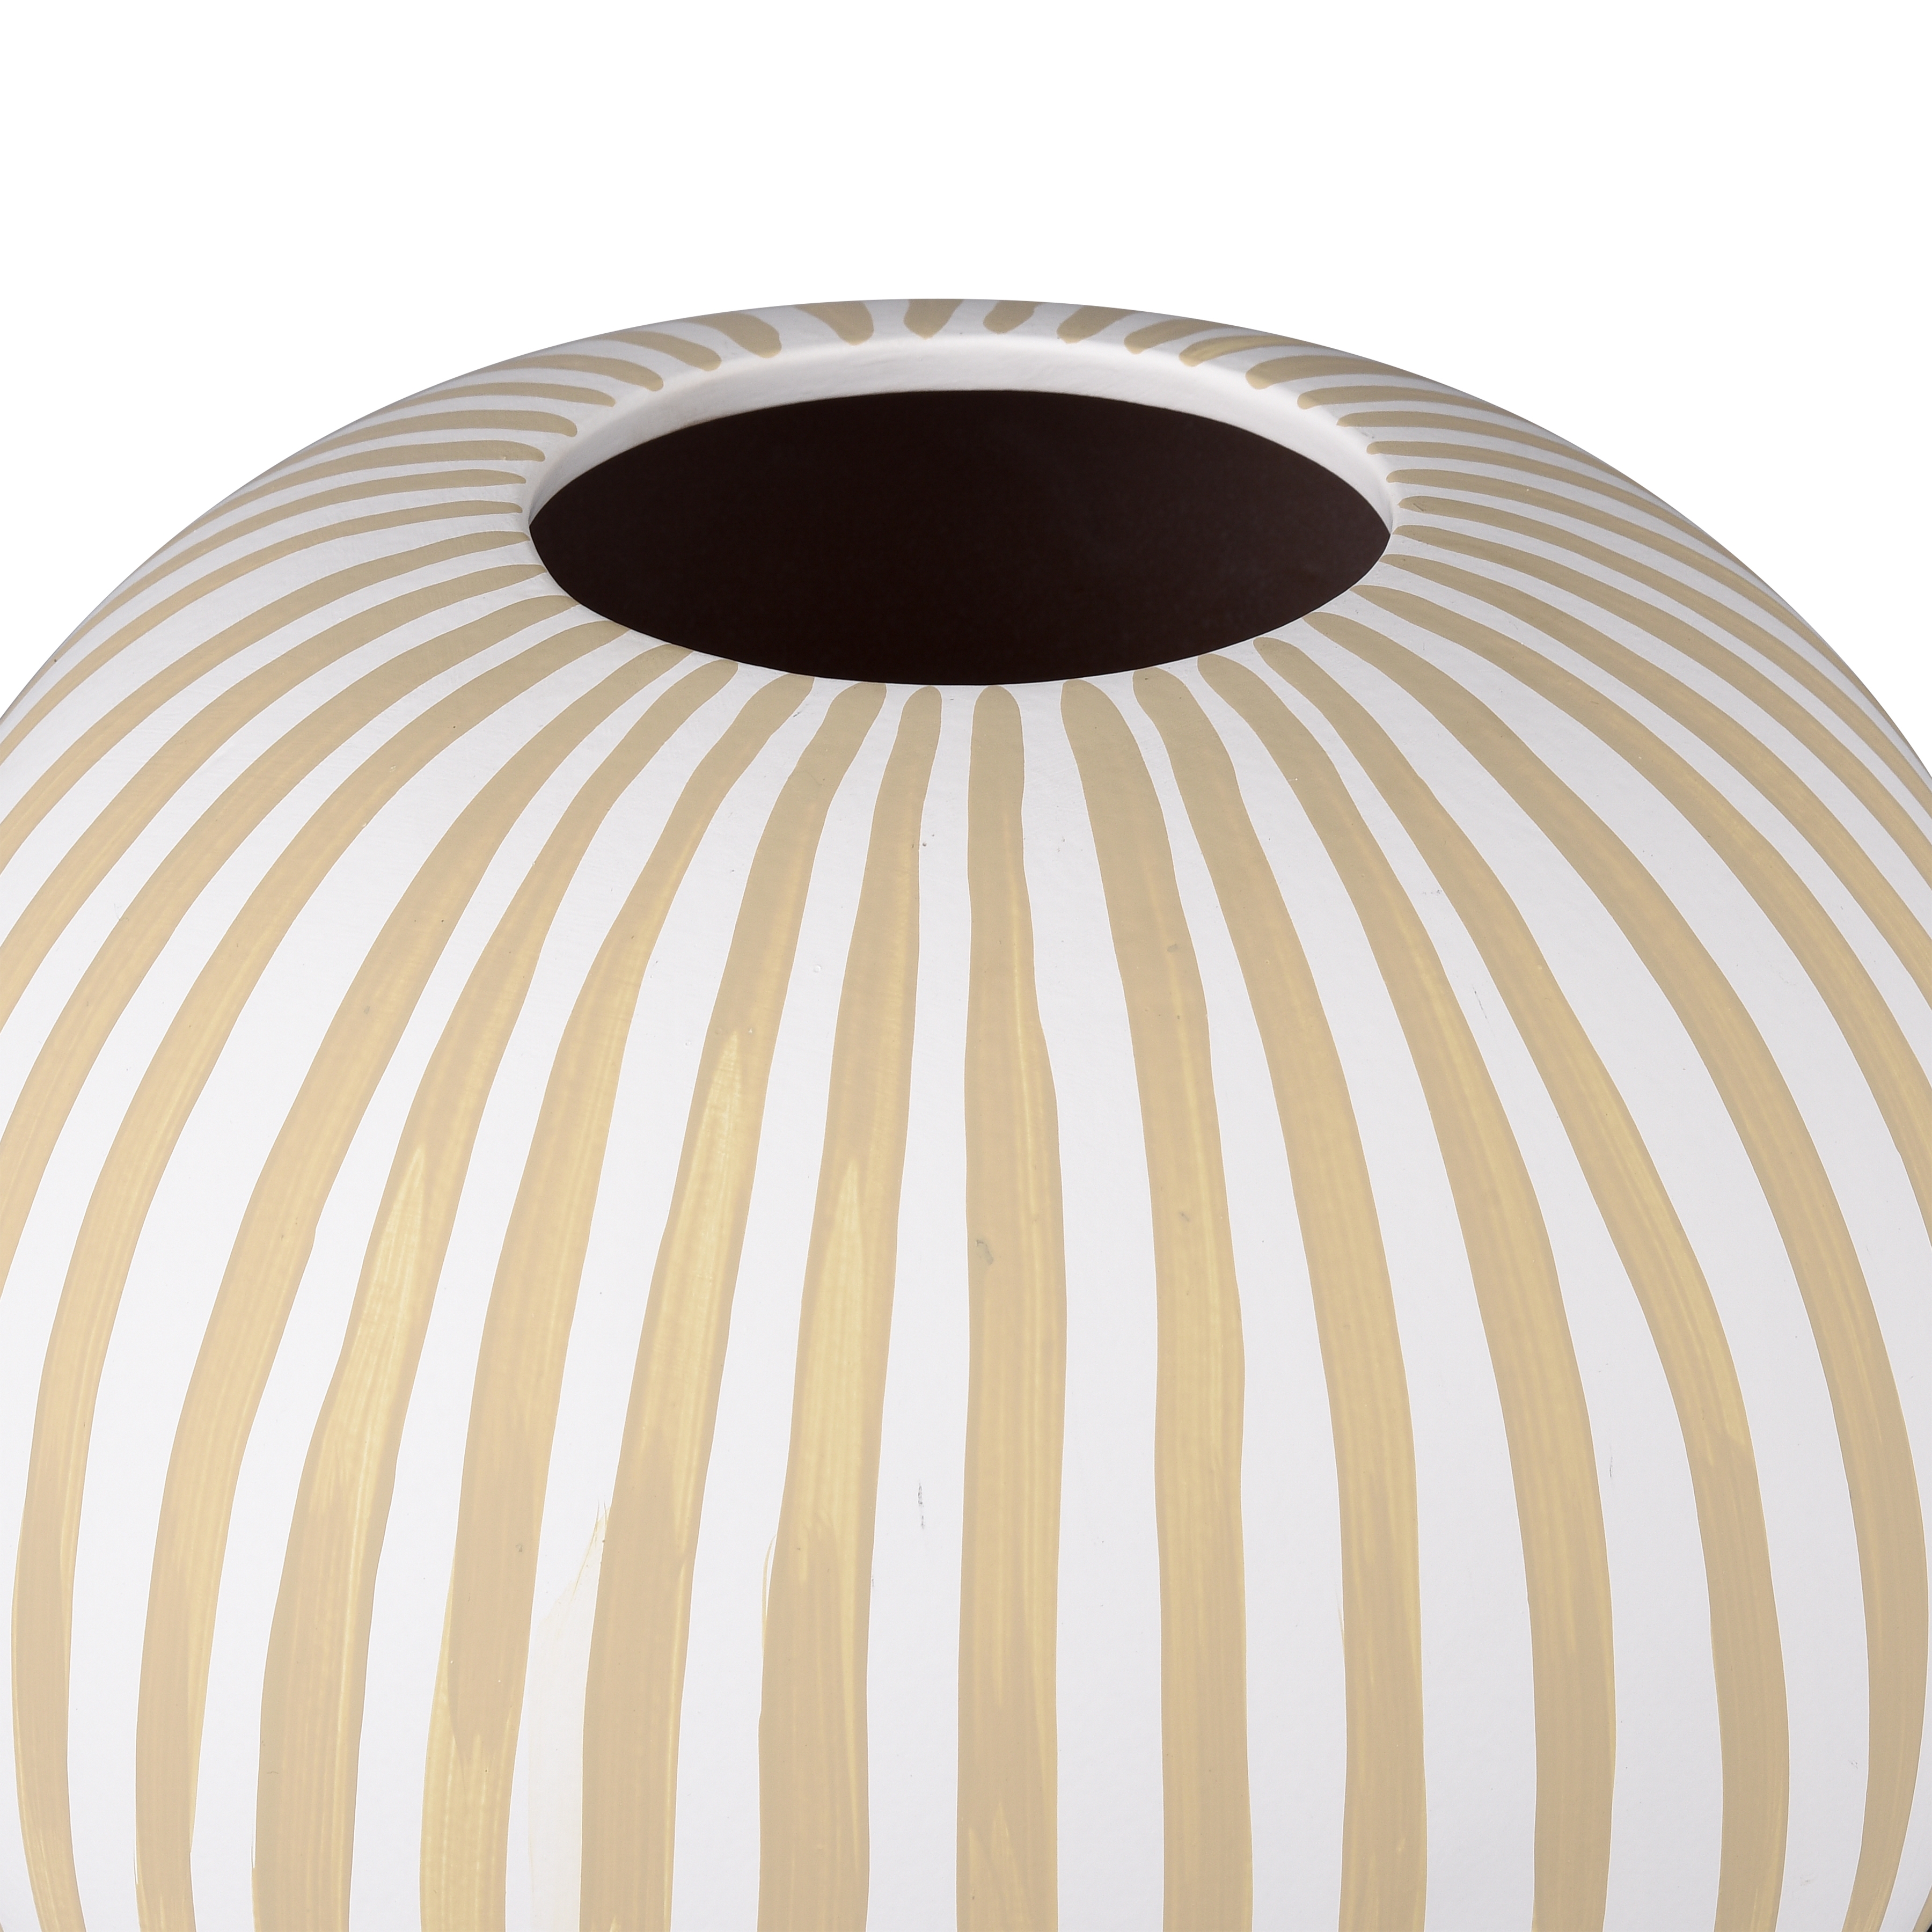 Hawking Striped Vase - Large - Image 1